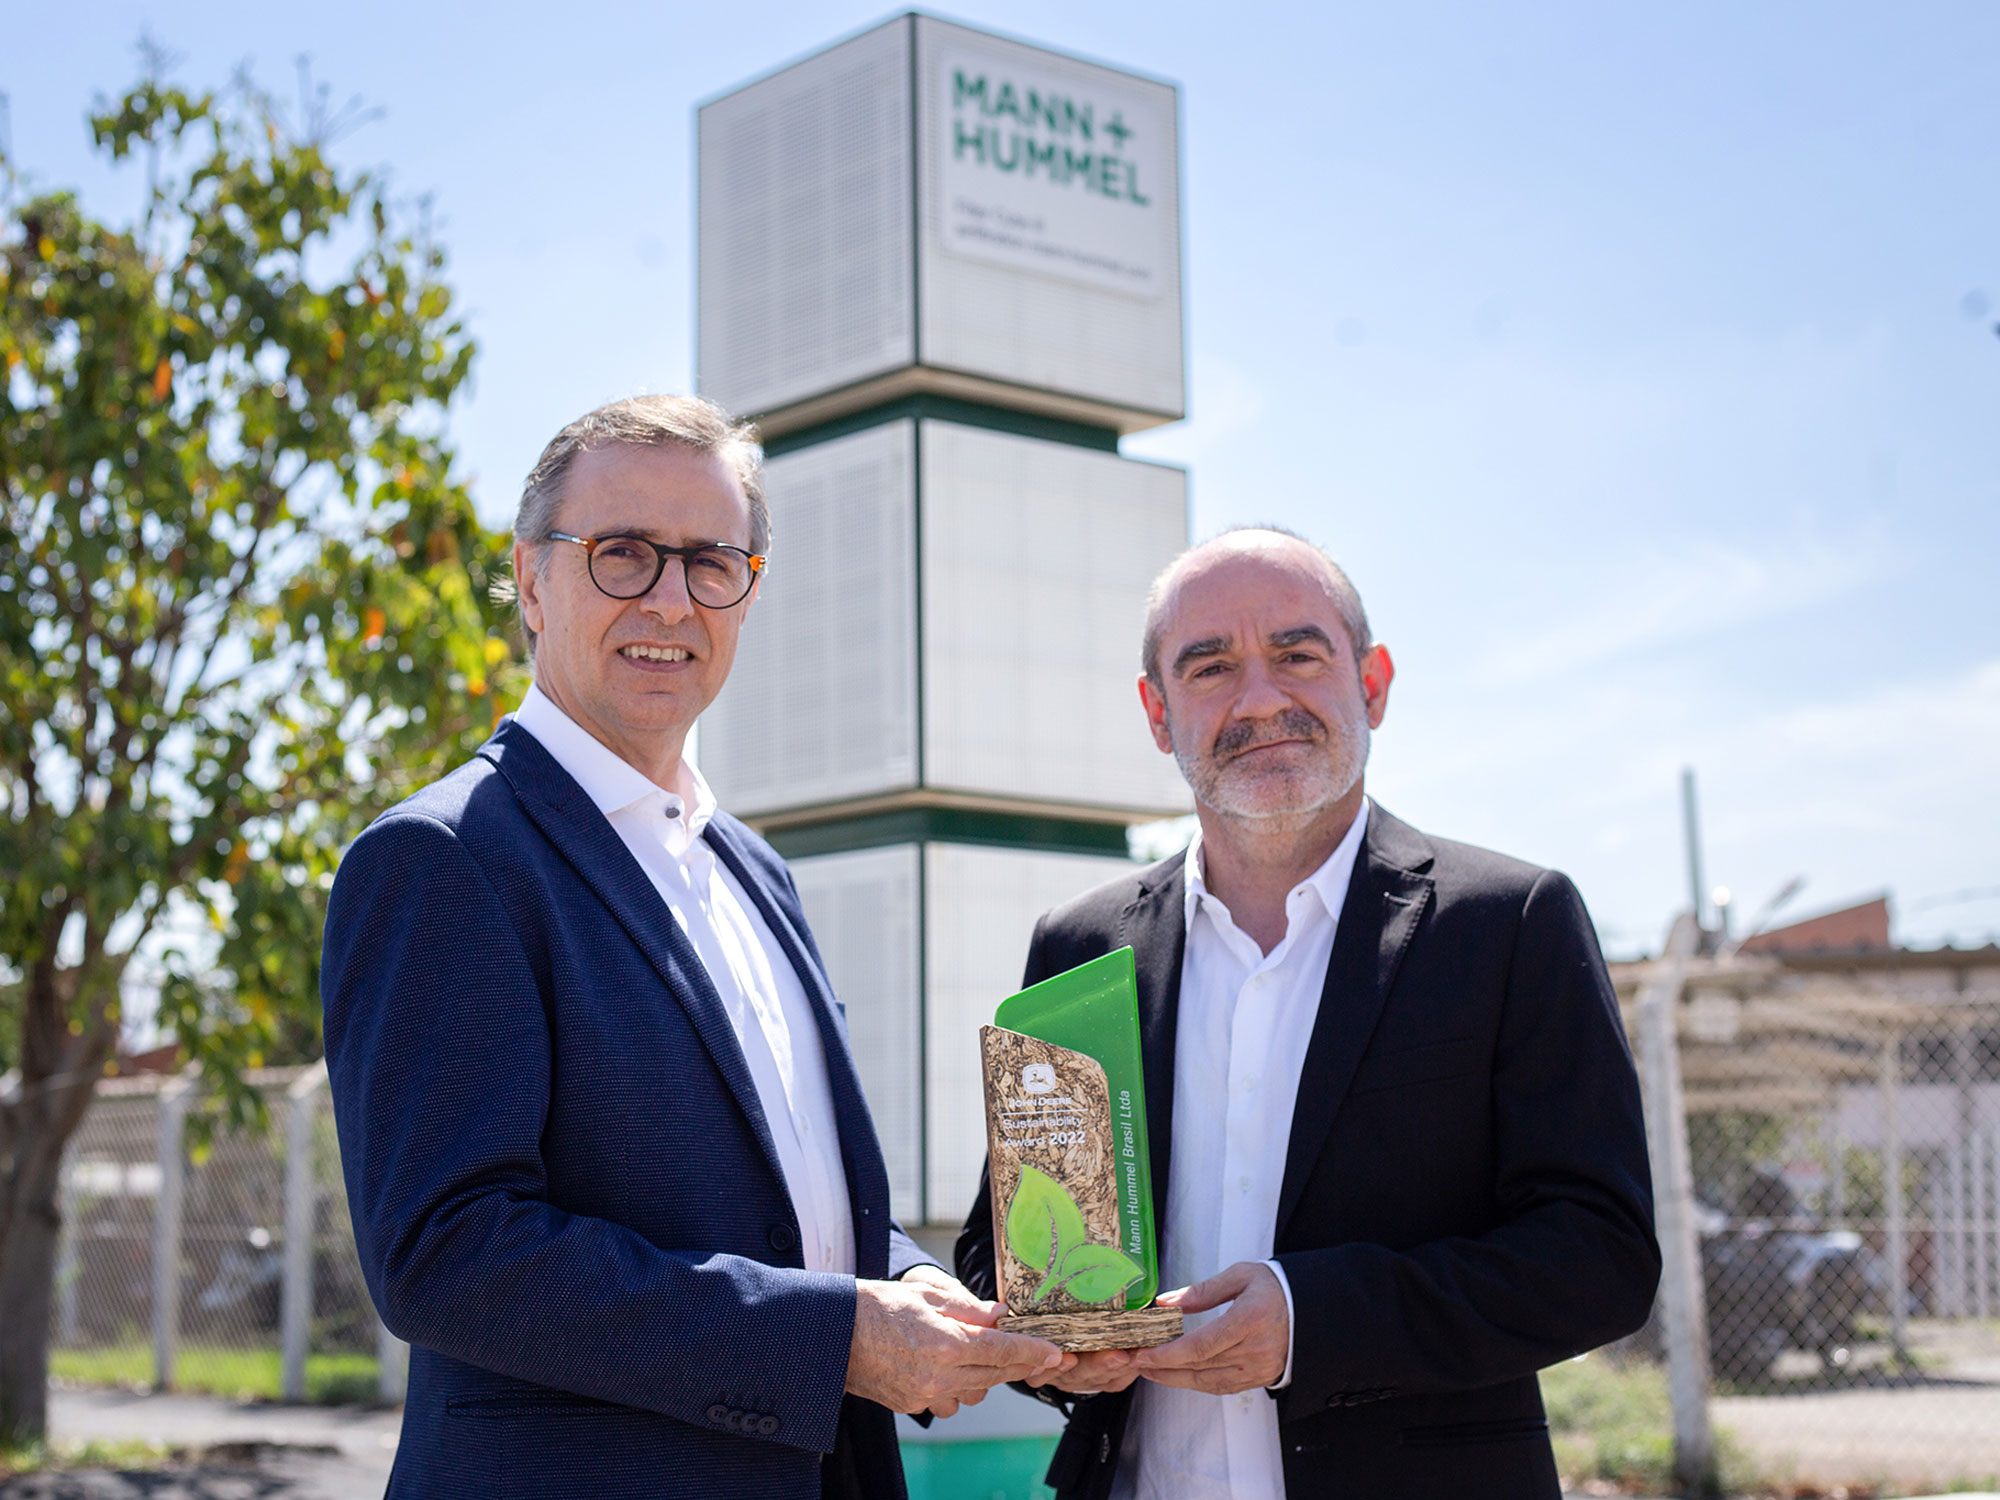 MANN+HUMMEL recebe premiação de sustentabilidade por torres de